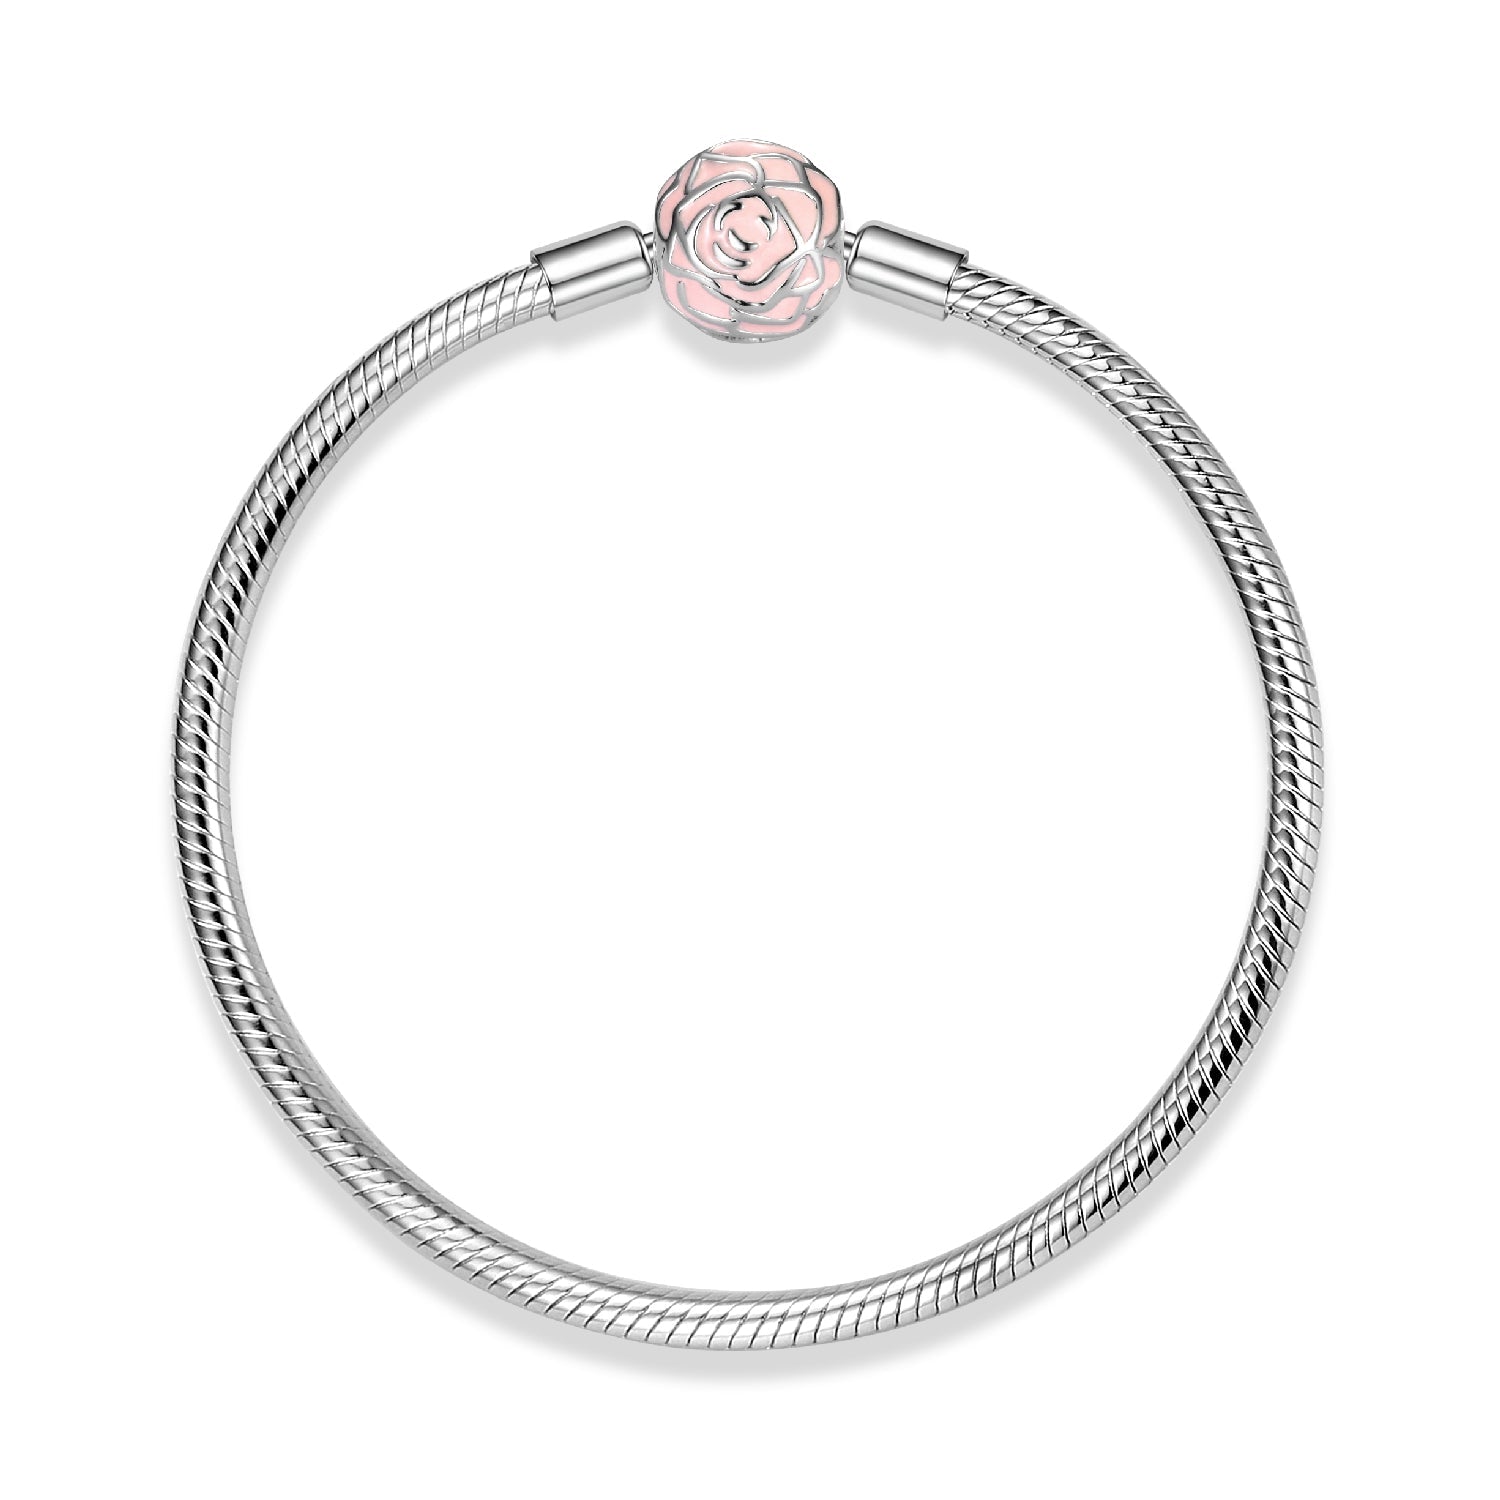 Snake link bracelet with rose clasp